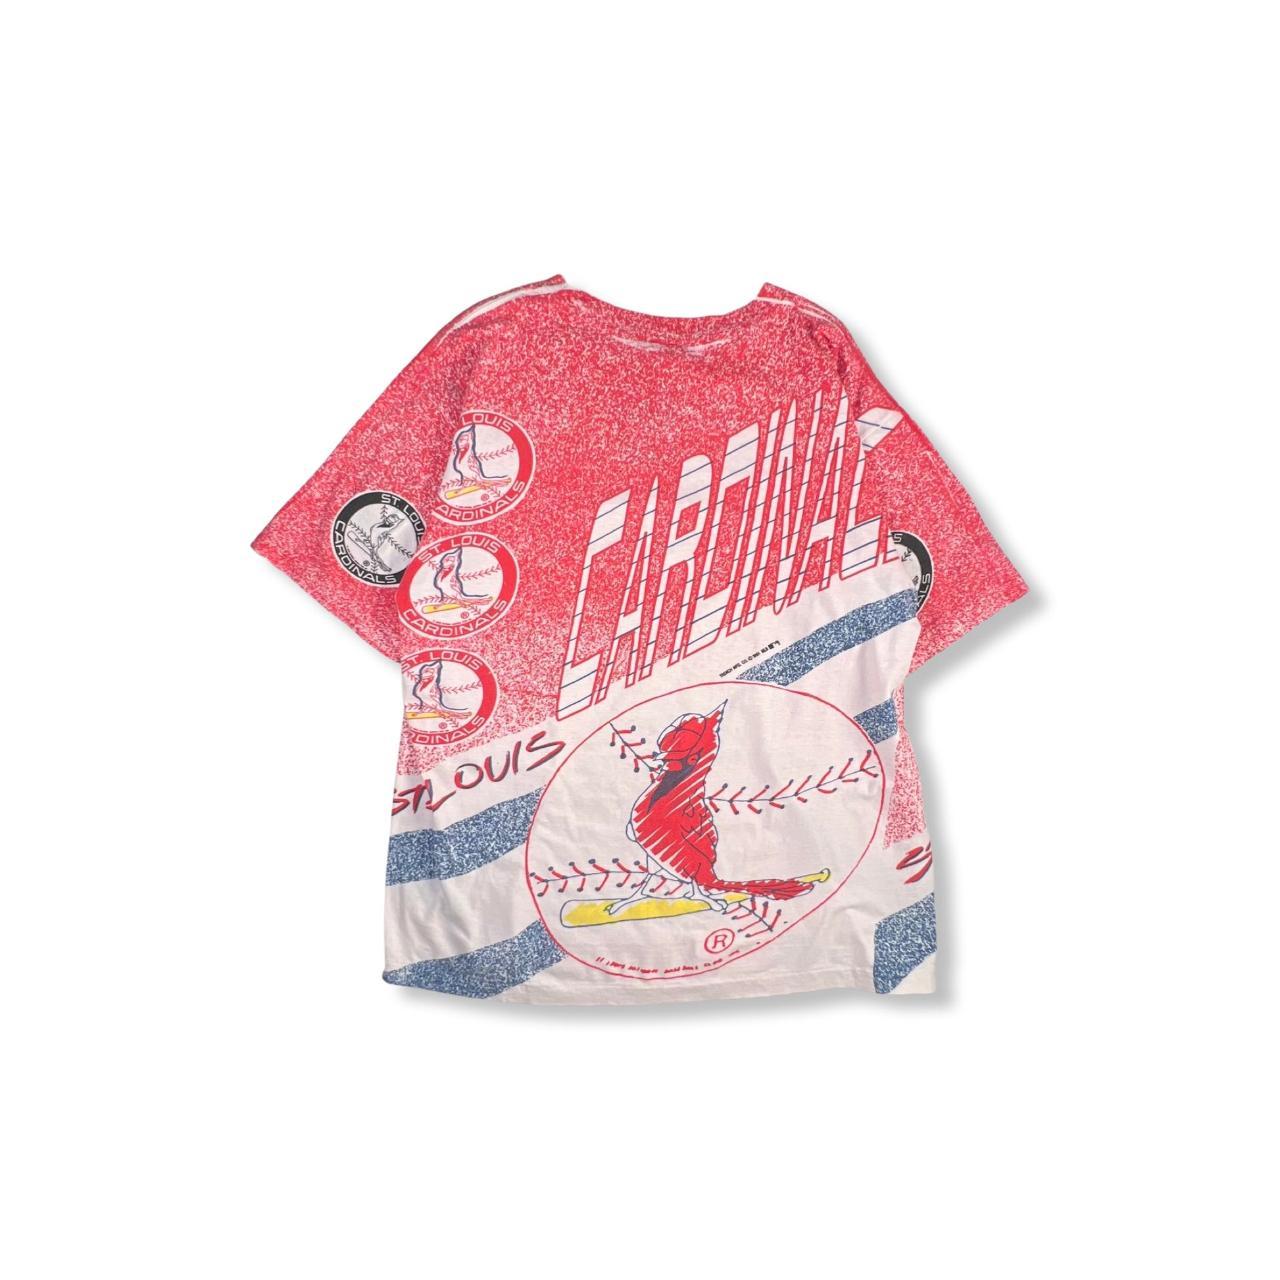 Vintage St. Louis Cardinals T-Shirt (1991) 